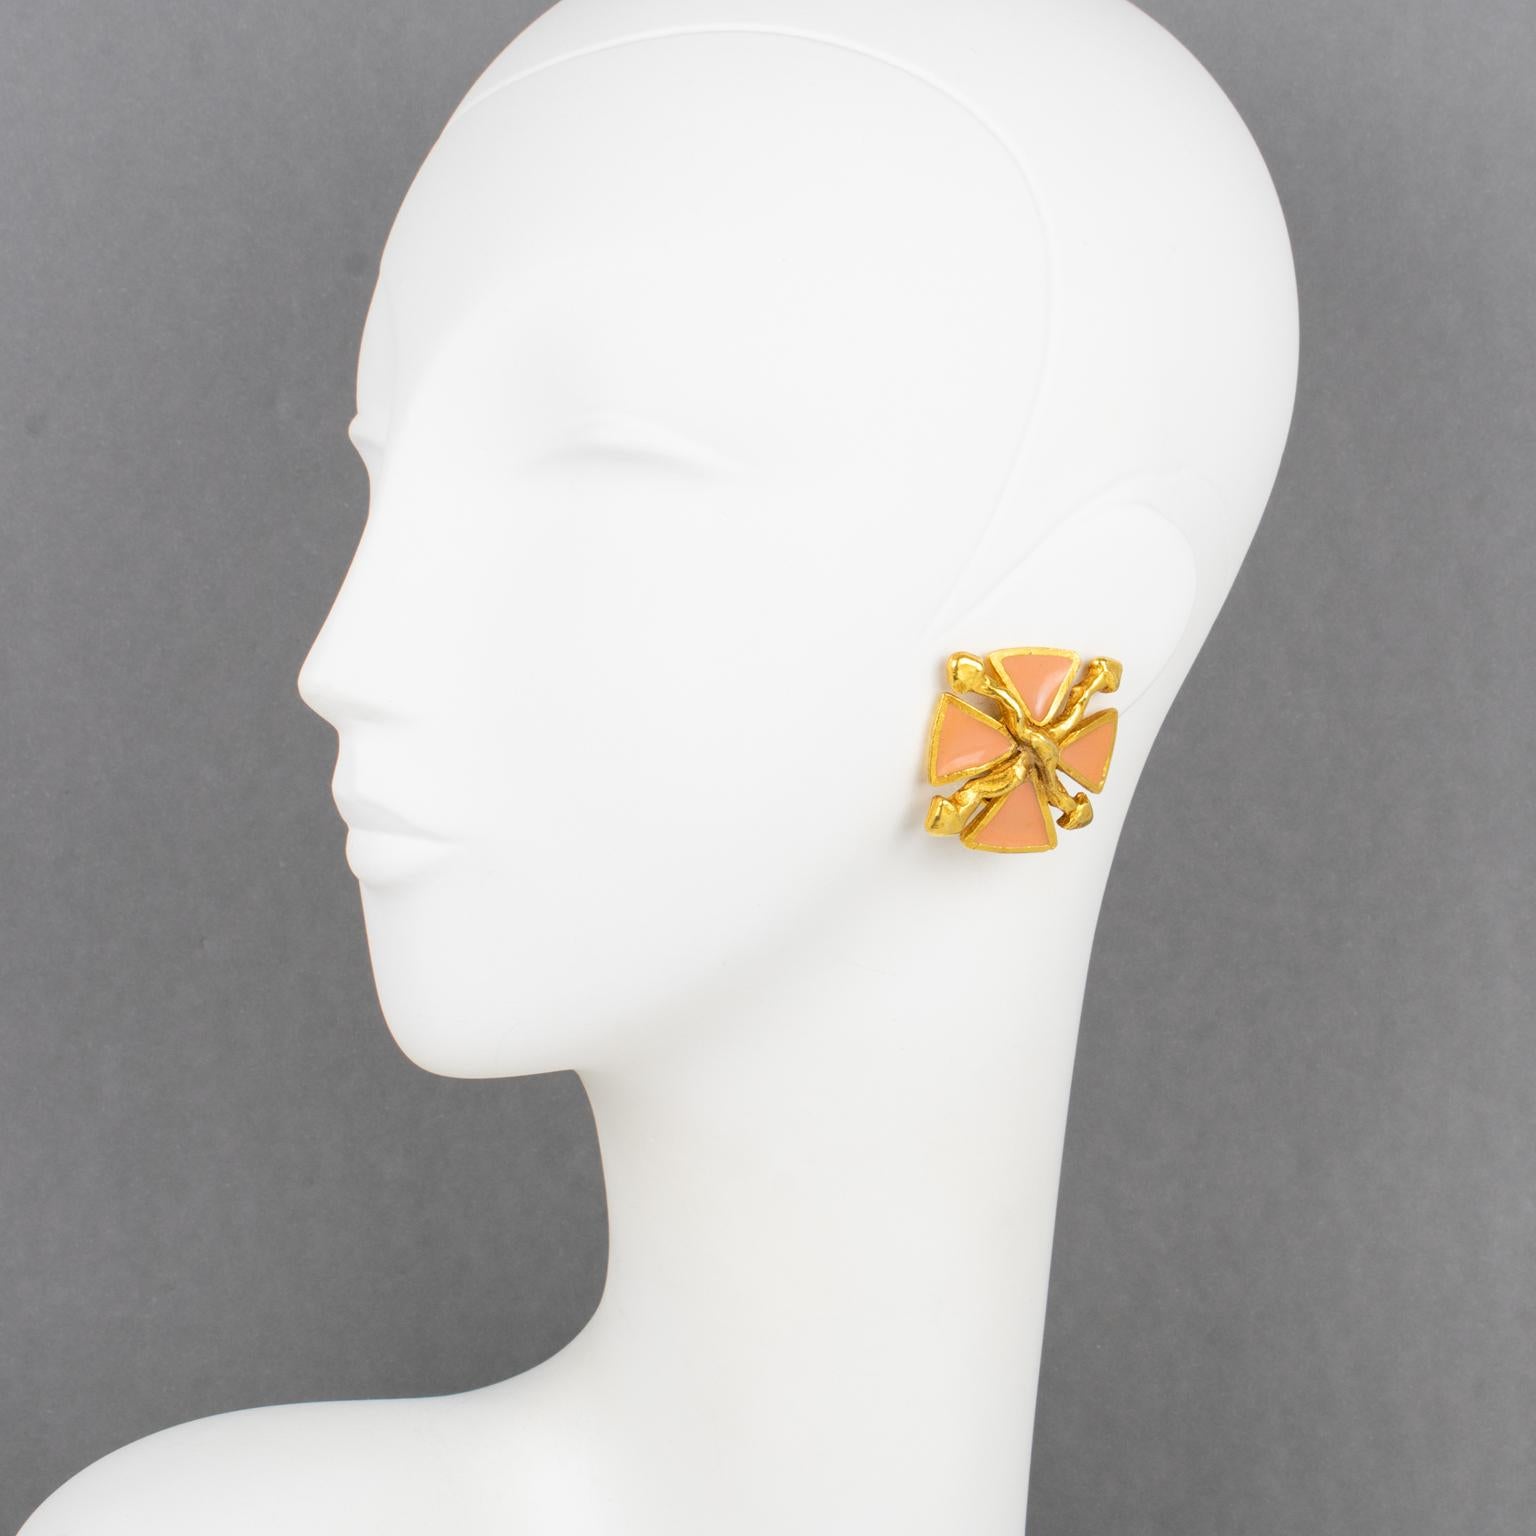 Antigona Paris a créé ces jolies boucles d'oreilles à clip dans les années 1980. Les pièces présentent un design de croix de Malte stylisée avec un encadrement en métal doré rehaussé d'émail rose saumoné. Le poinçon d'Antigona Paris figure sur la